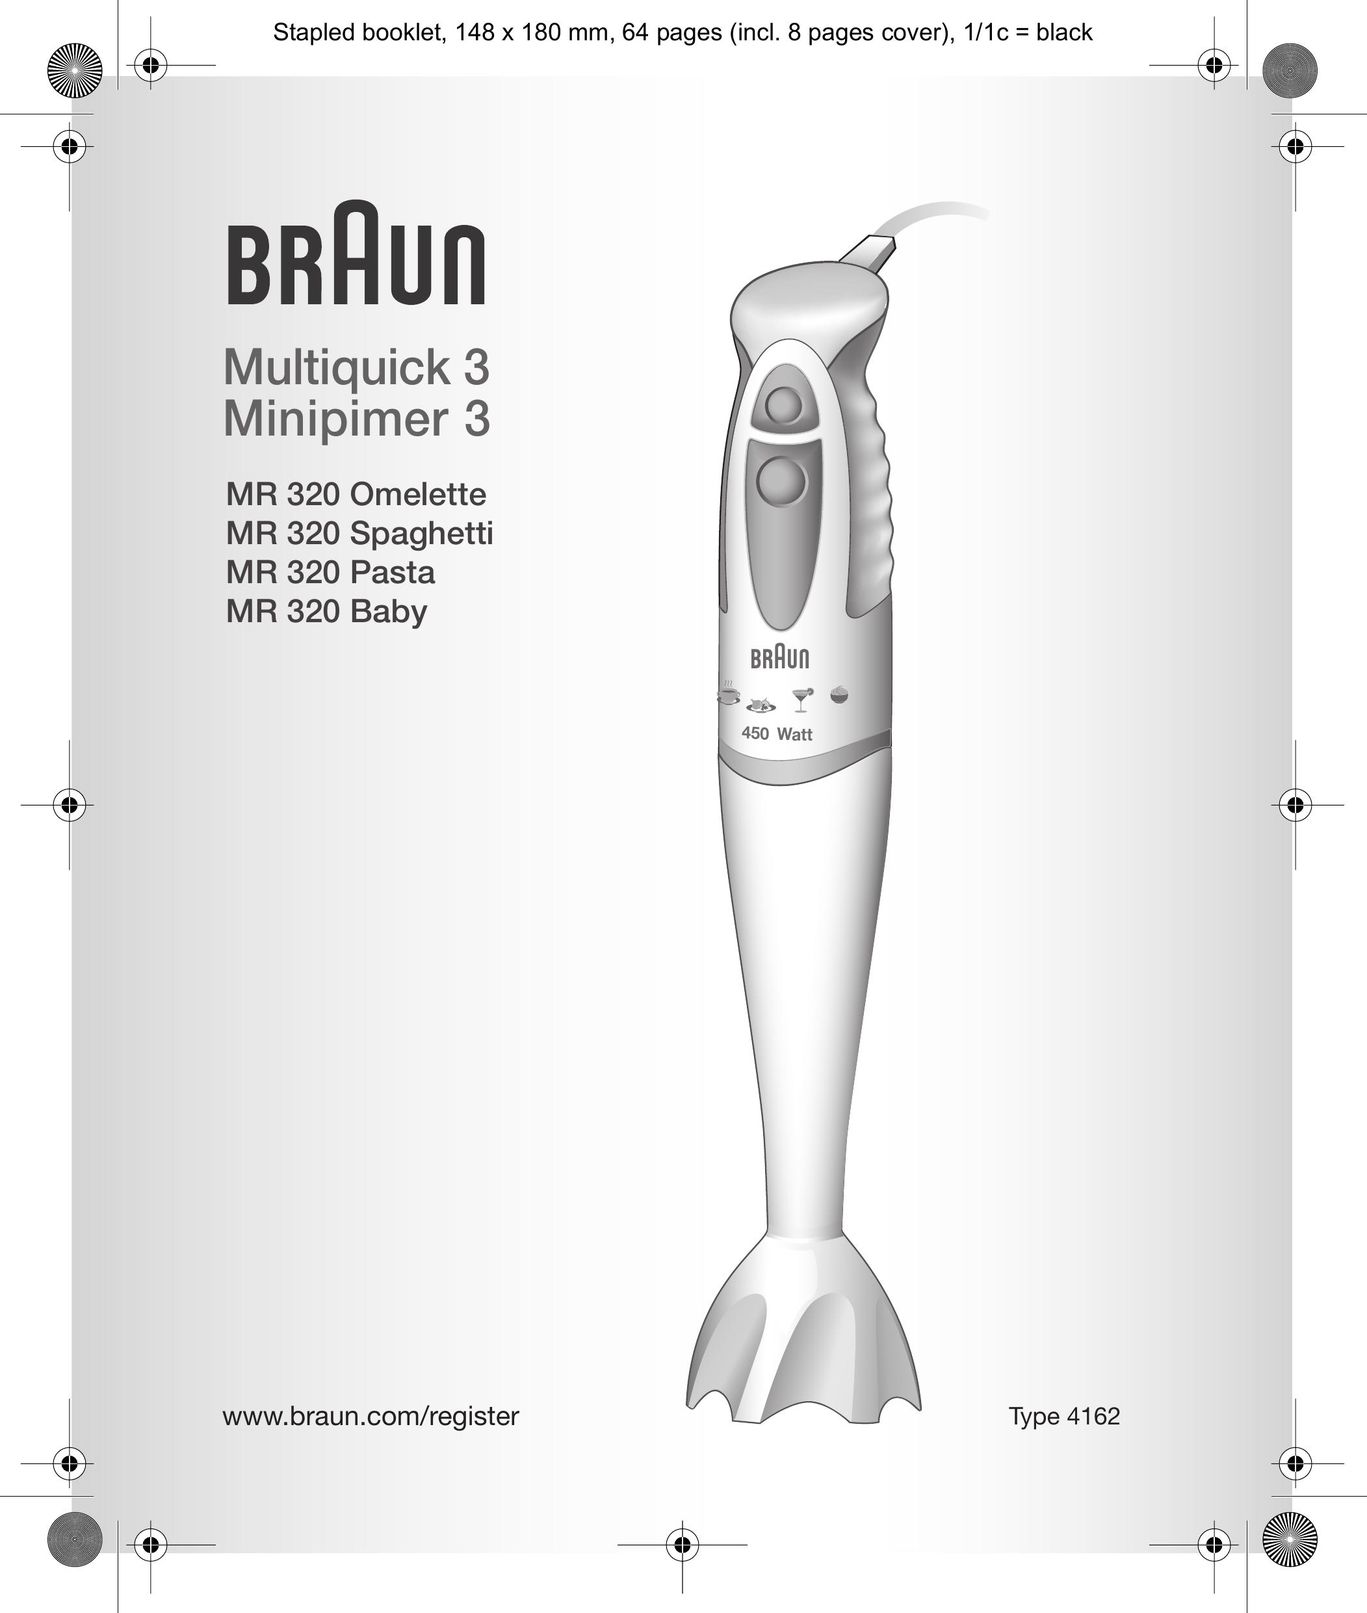 Braun MR 320 Mixer User Manual